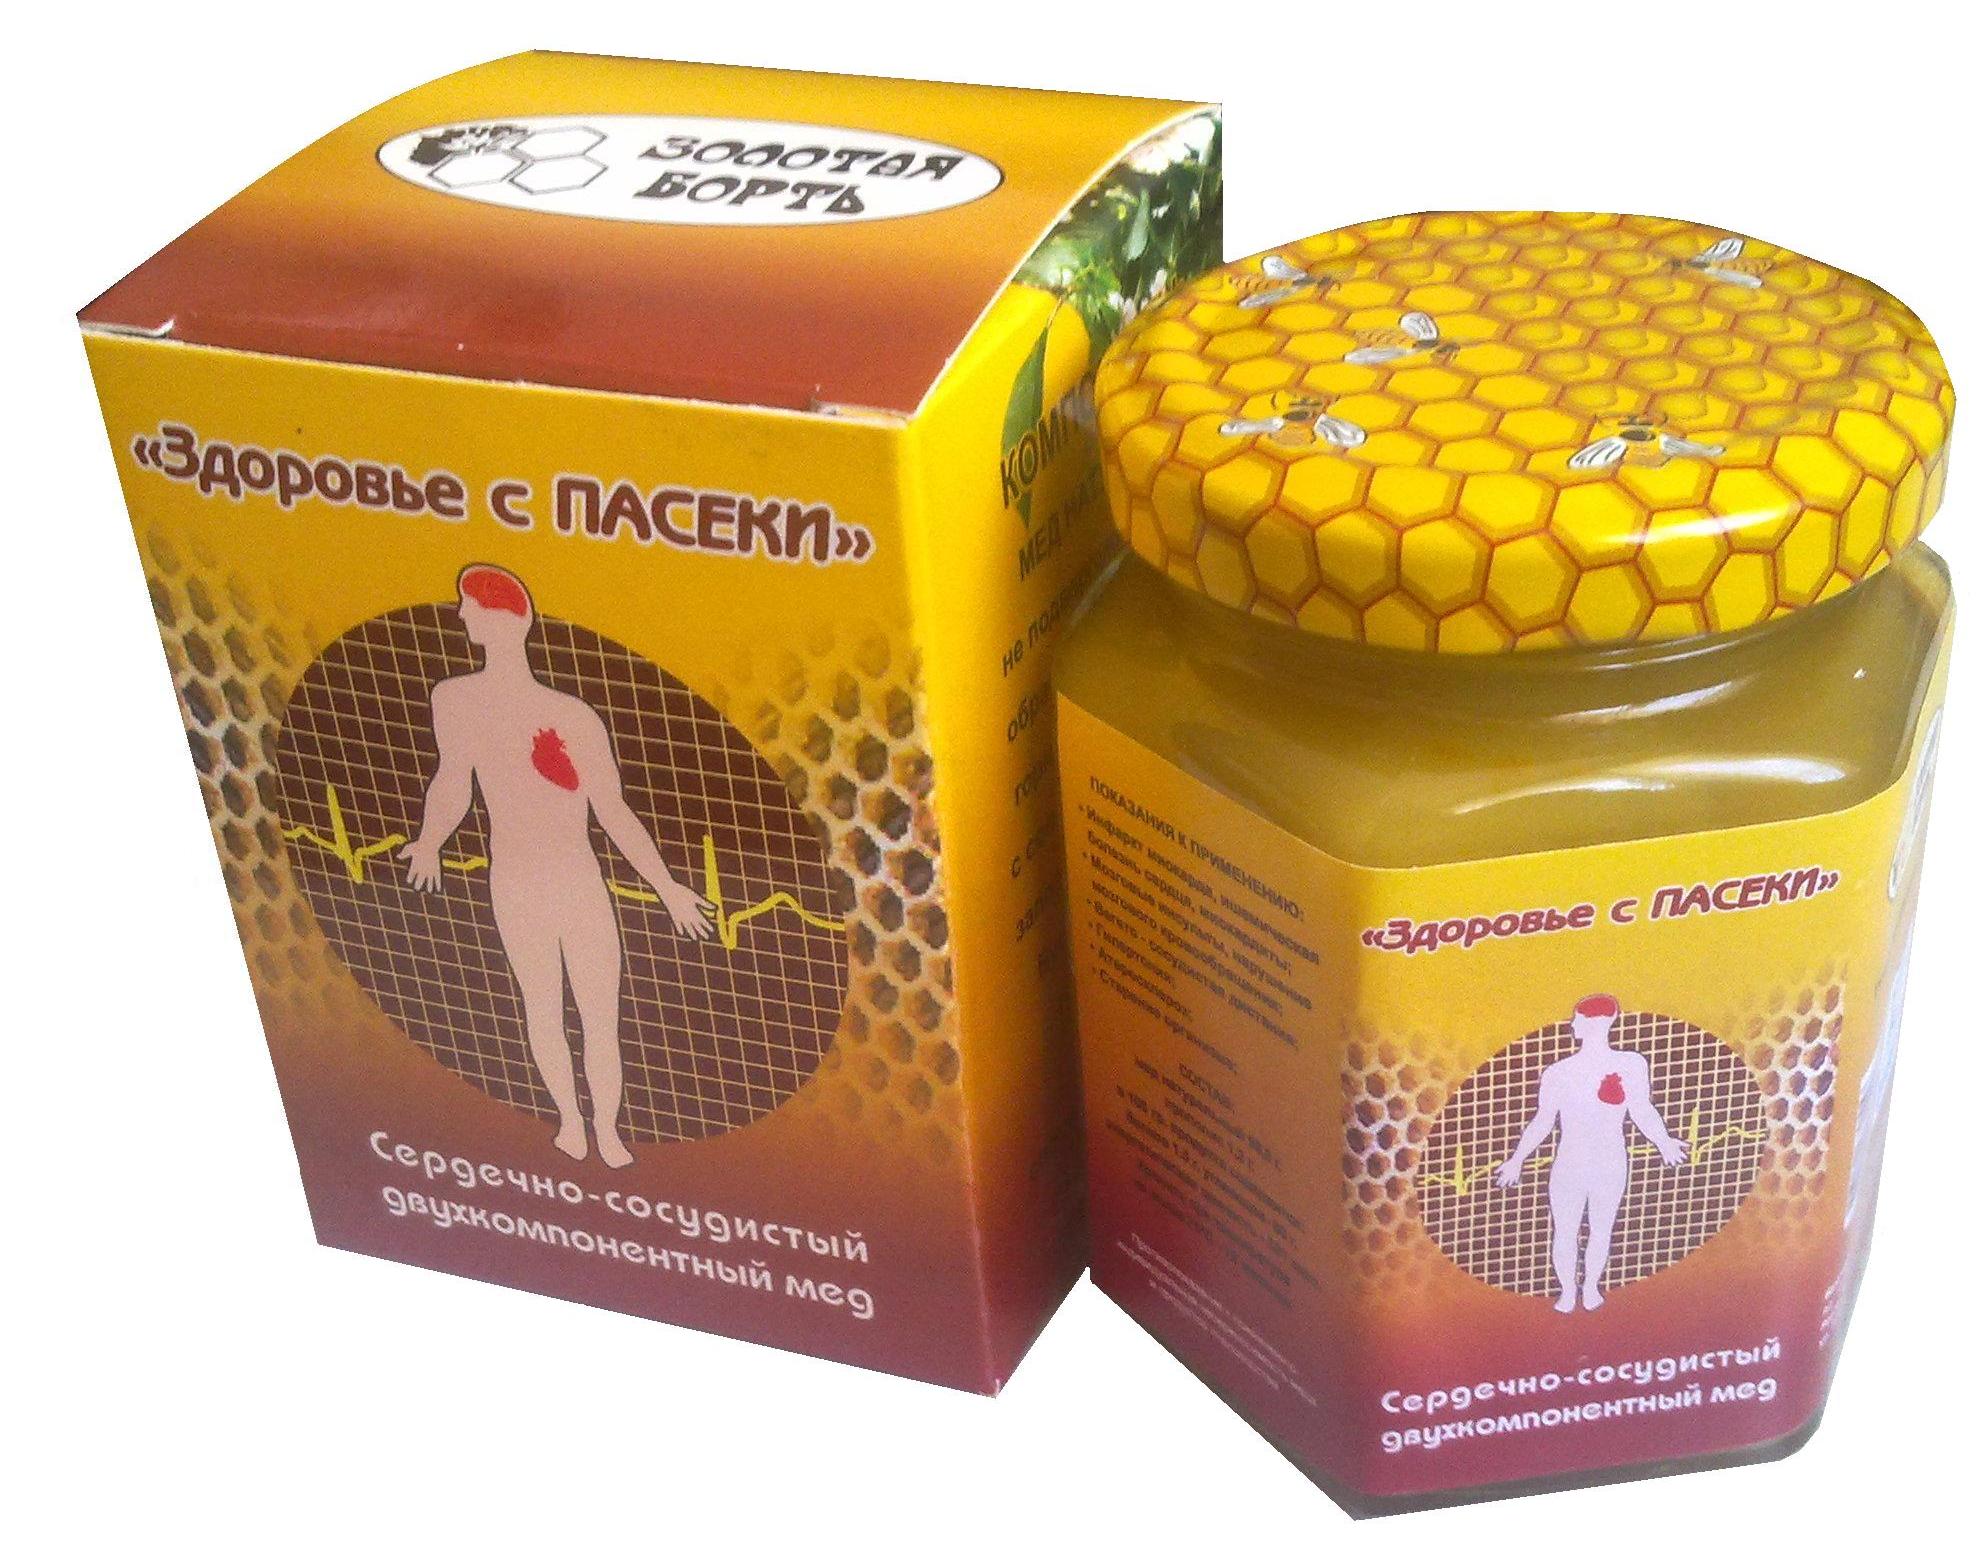 Лечение продуктами пчеловодства. Продукты пчеловодства. Препараты из меда. Препараты пчелиного меда. Продукты пчеловодства лекарства.